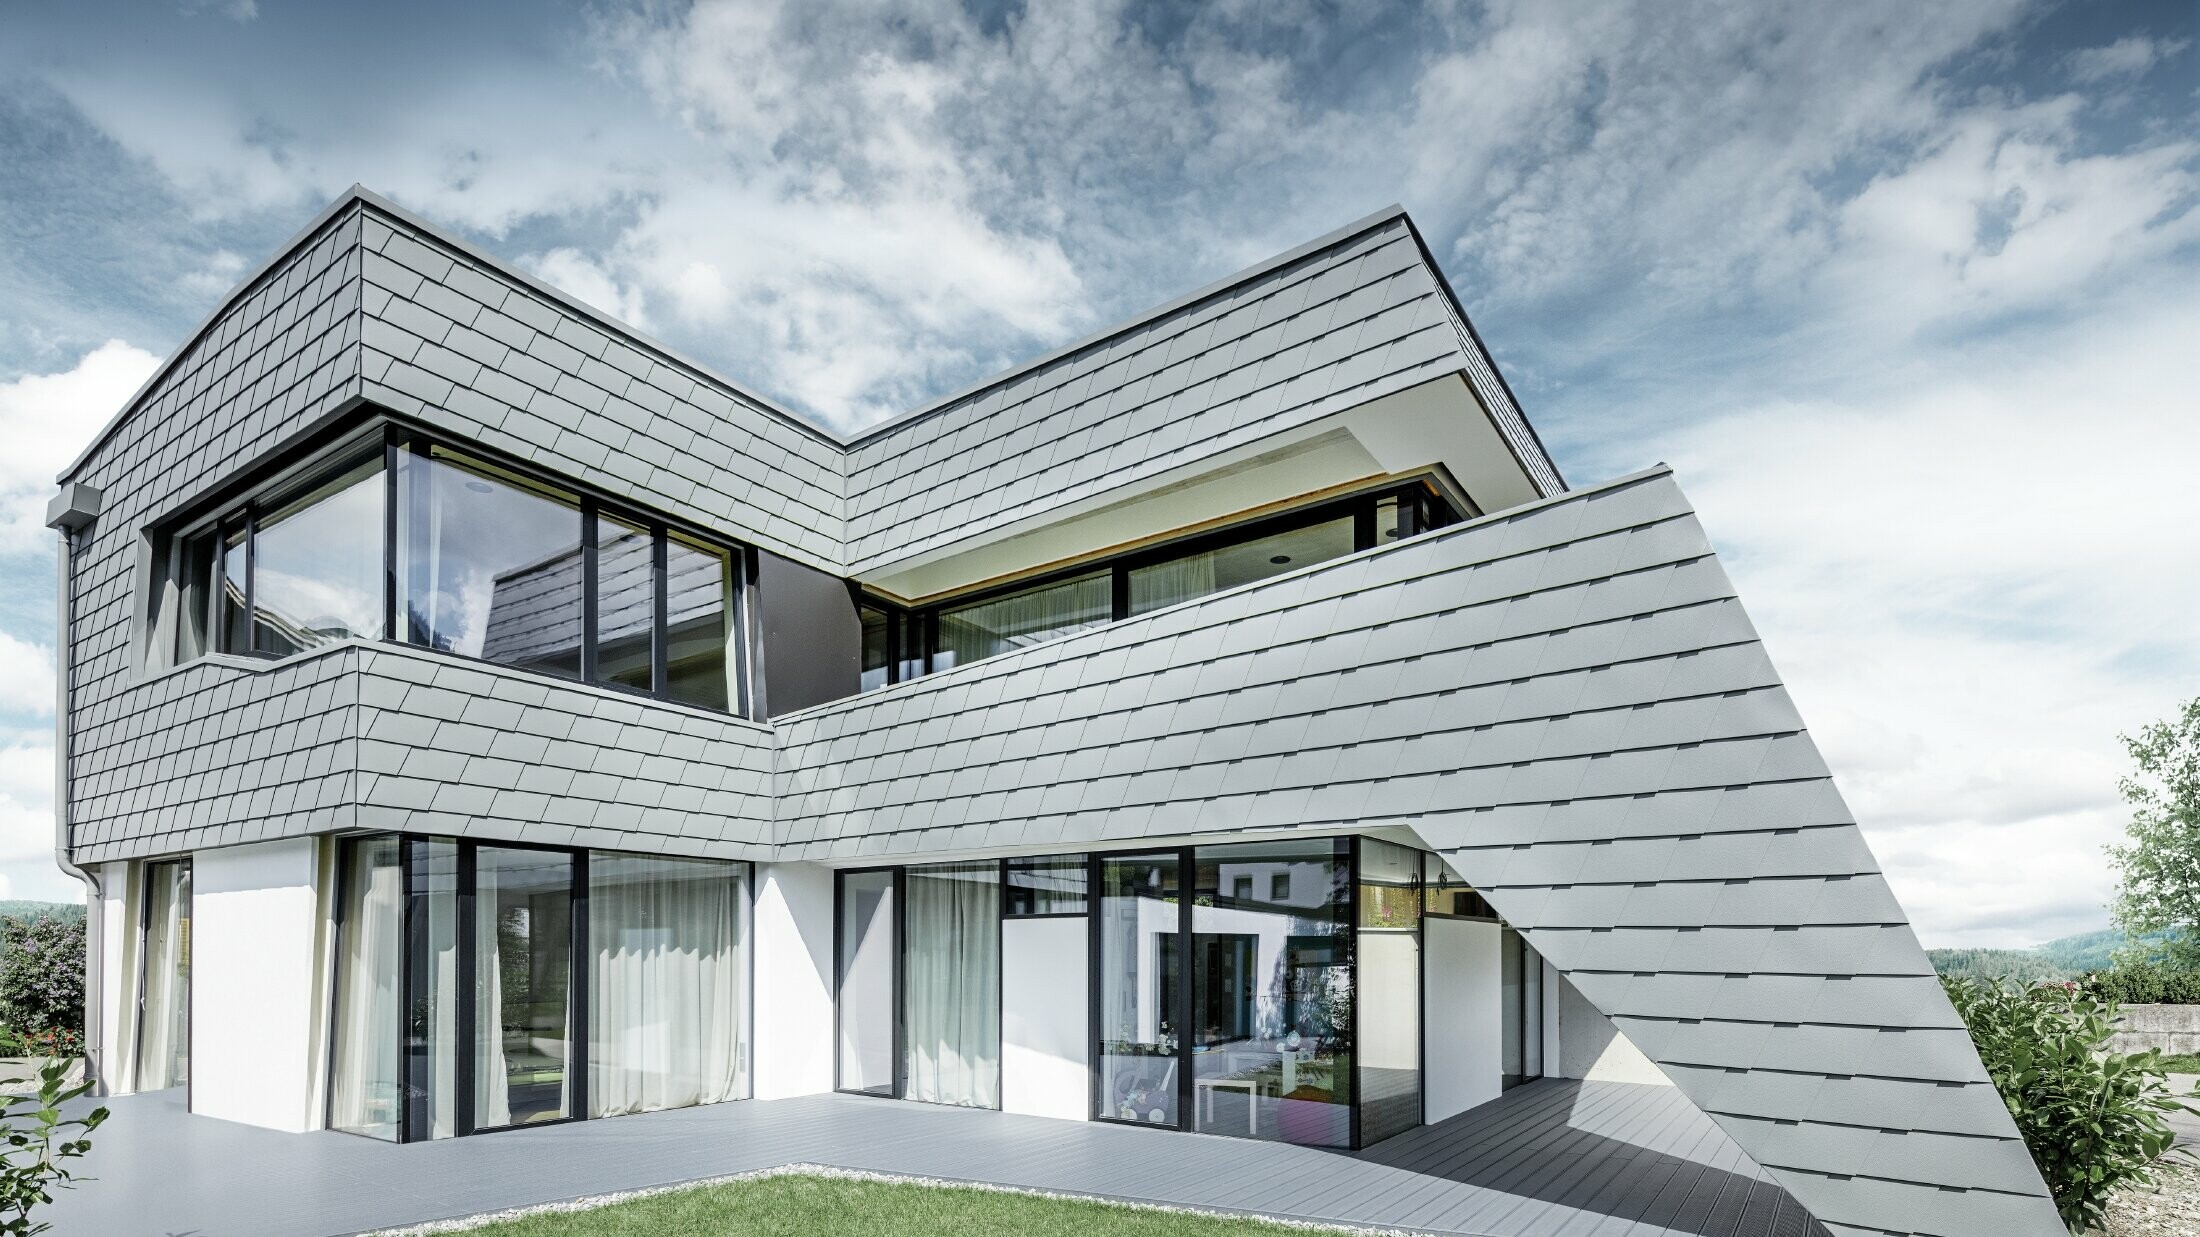 Sodobna enodružinska hiša z ravno streho, velikimi okni in fasado iz aluminijastih skodel PREFA v svetlo sivi barvi